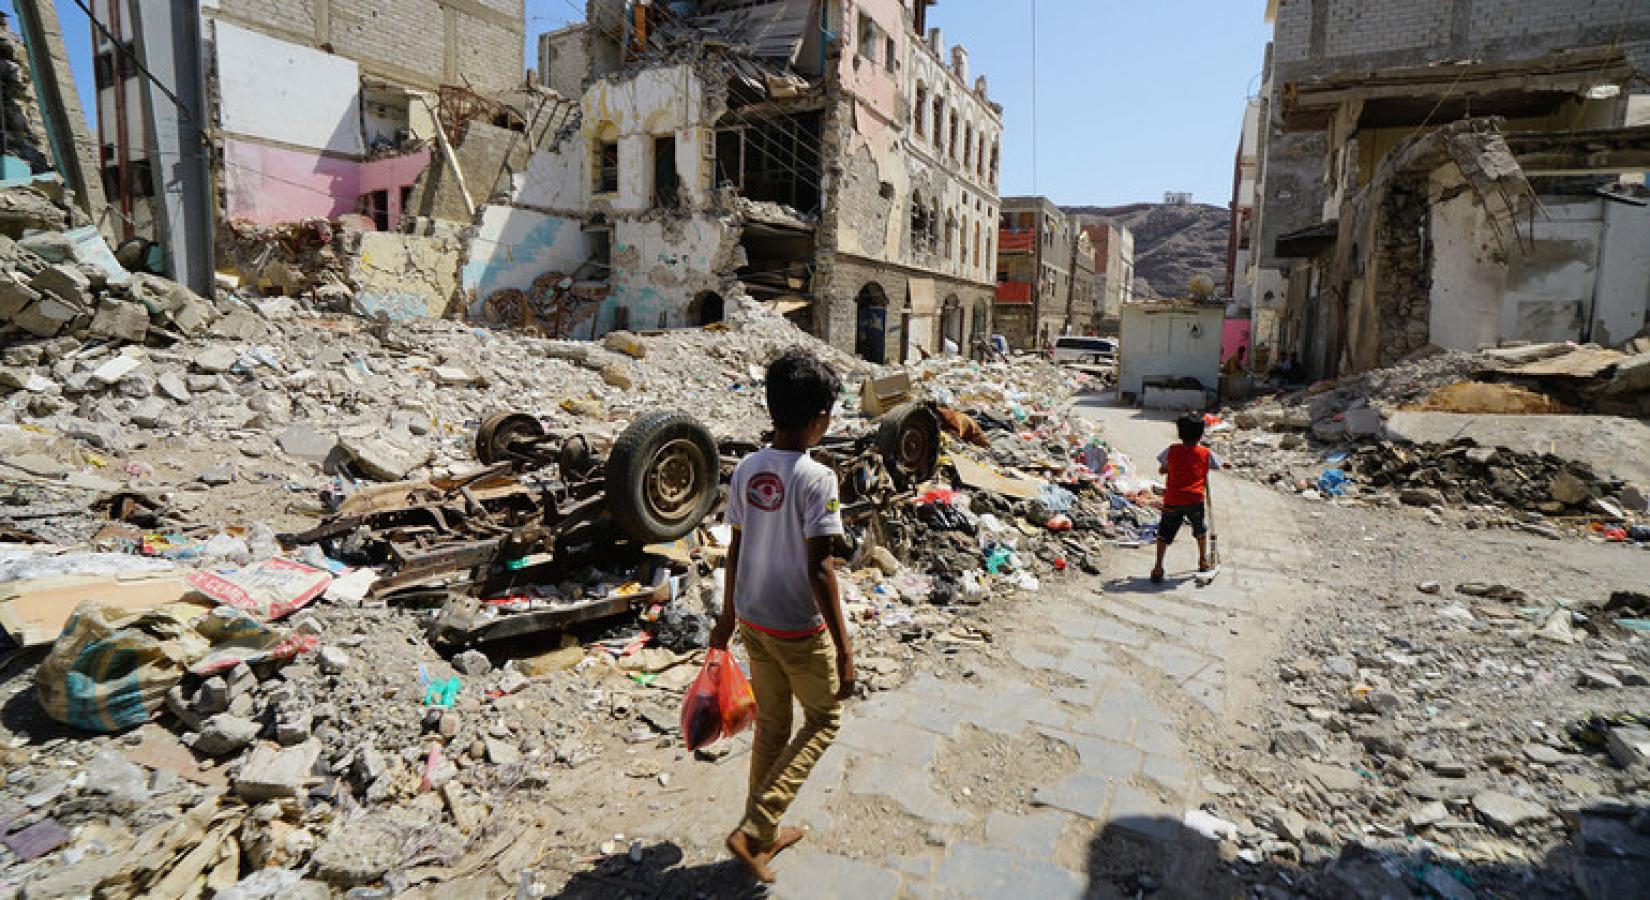 Crianças caminham por uma parte do centro de Craiter, em Aden, no Iêmen. A área foi seriamente danificada pelos ataques aéreos em 2015, quando os houthi foram expulsos da cidade pelas forças da coalizão. Foto: OCHA / Giles Clarke